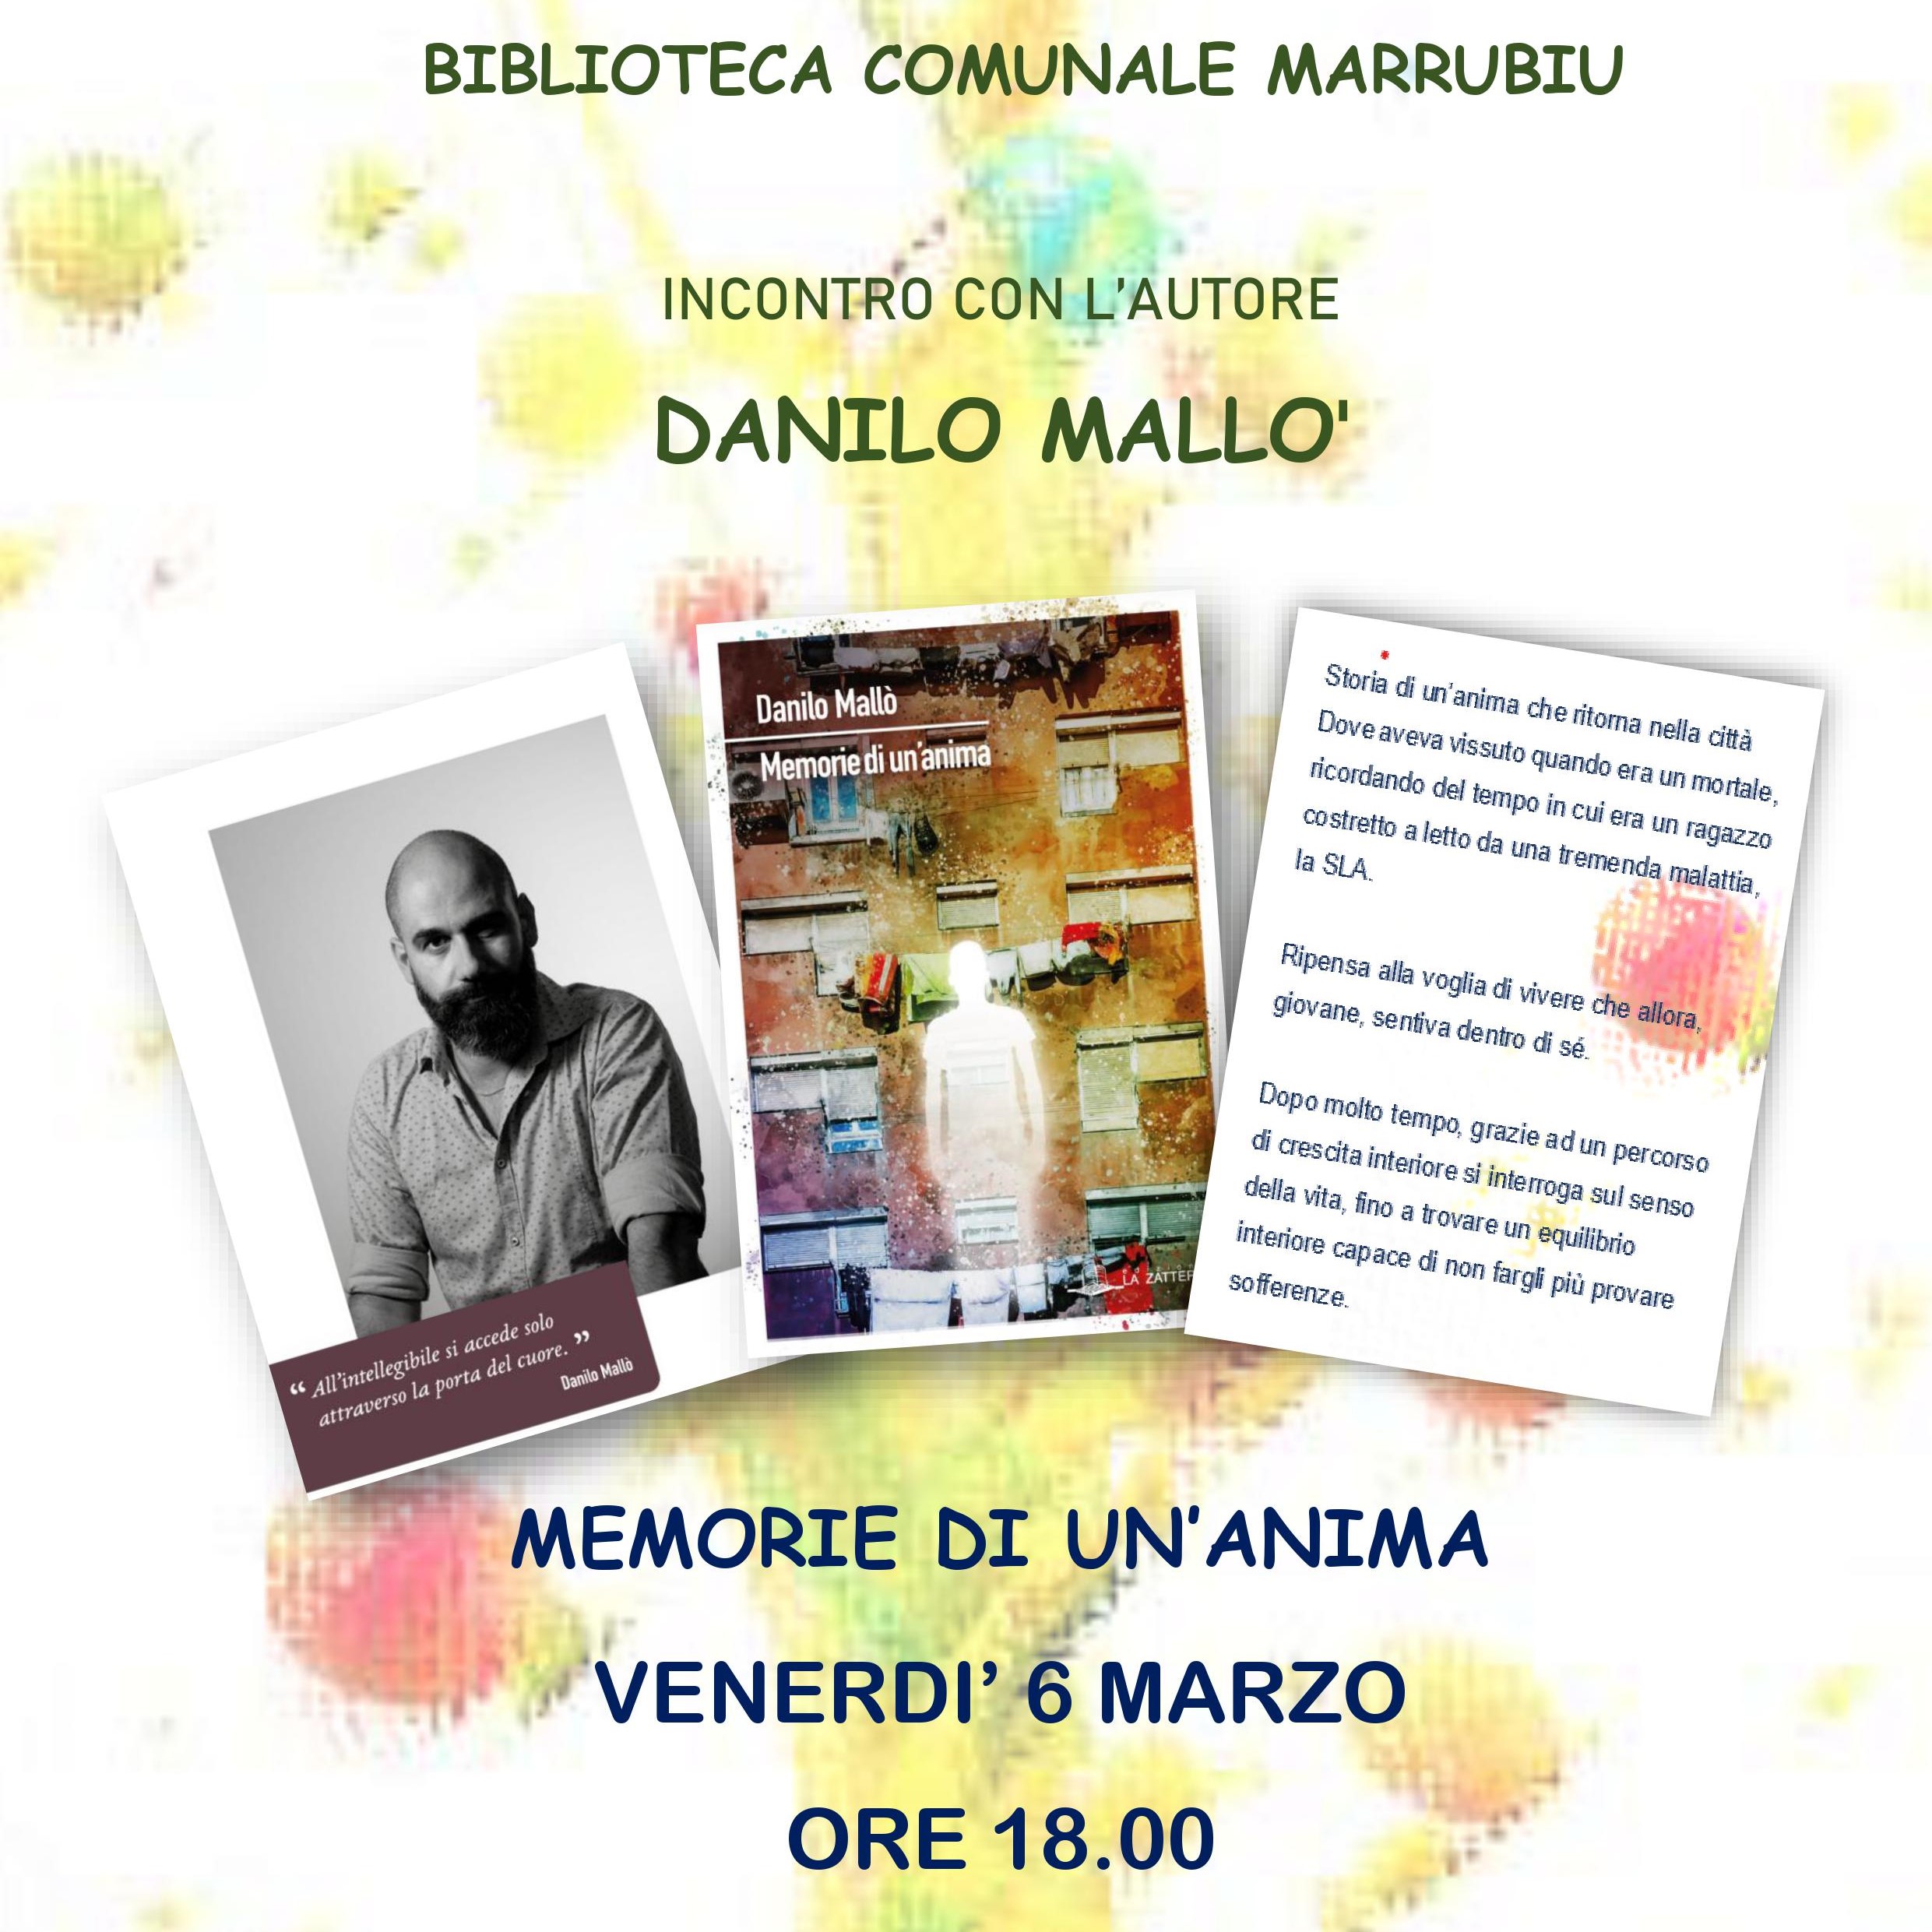 Presentazione del libro "Memorie di un'anima" di Danilo Mallò